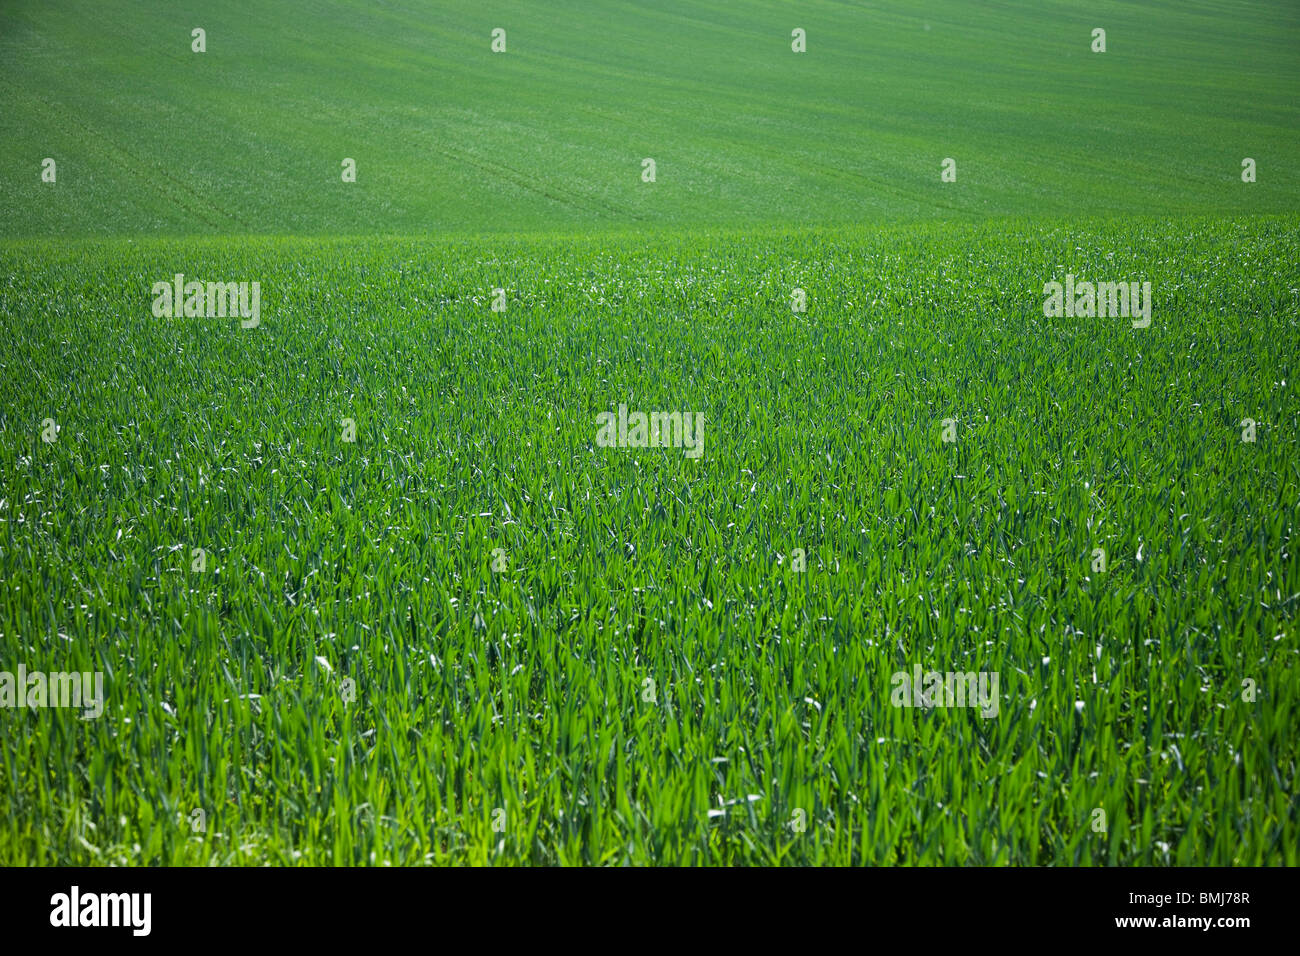 Verdi ondulate colline coperte in colture di alimentazione. Foto Stock